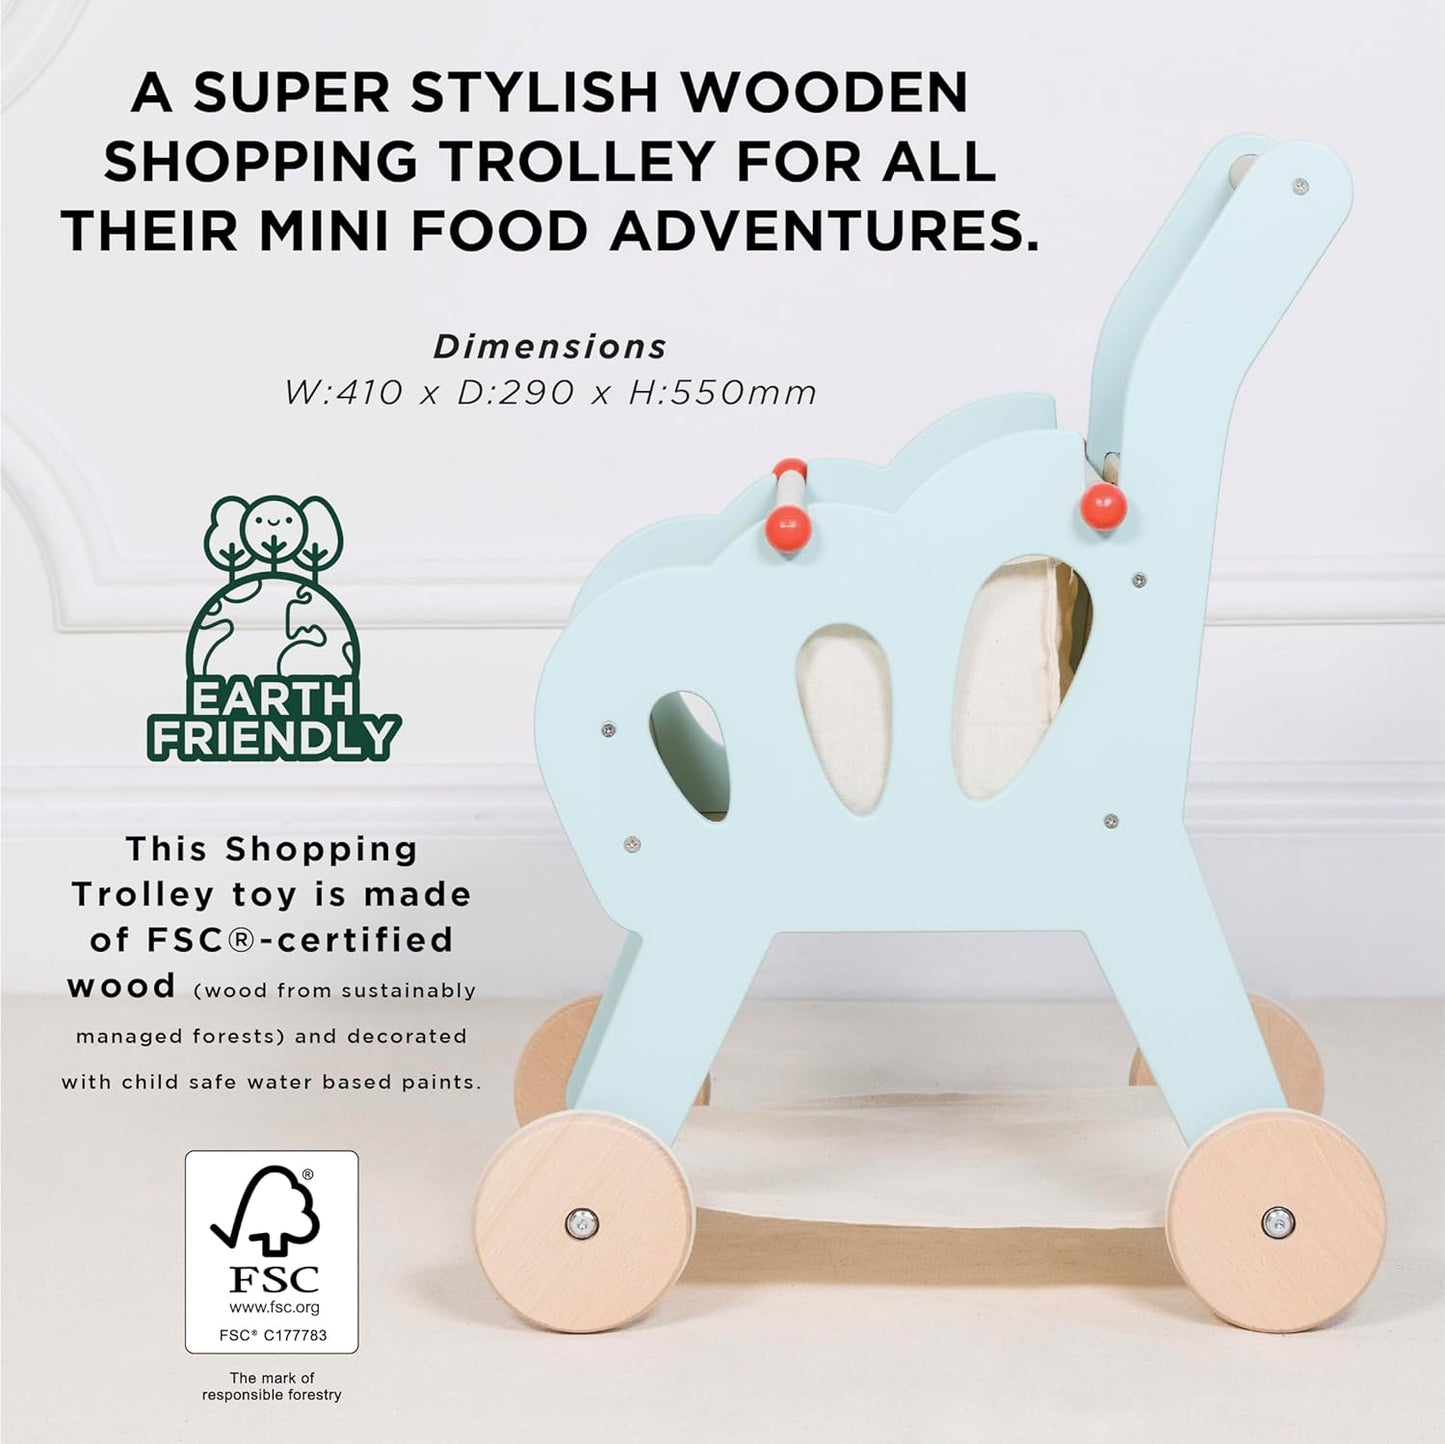 Le Toy Van - Carrinho de compras de madeira Honeybake com bolsa removível | Supermercado fingir brincar de loja de comida